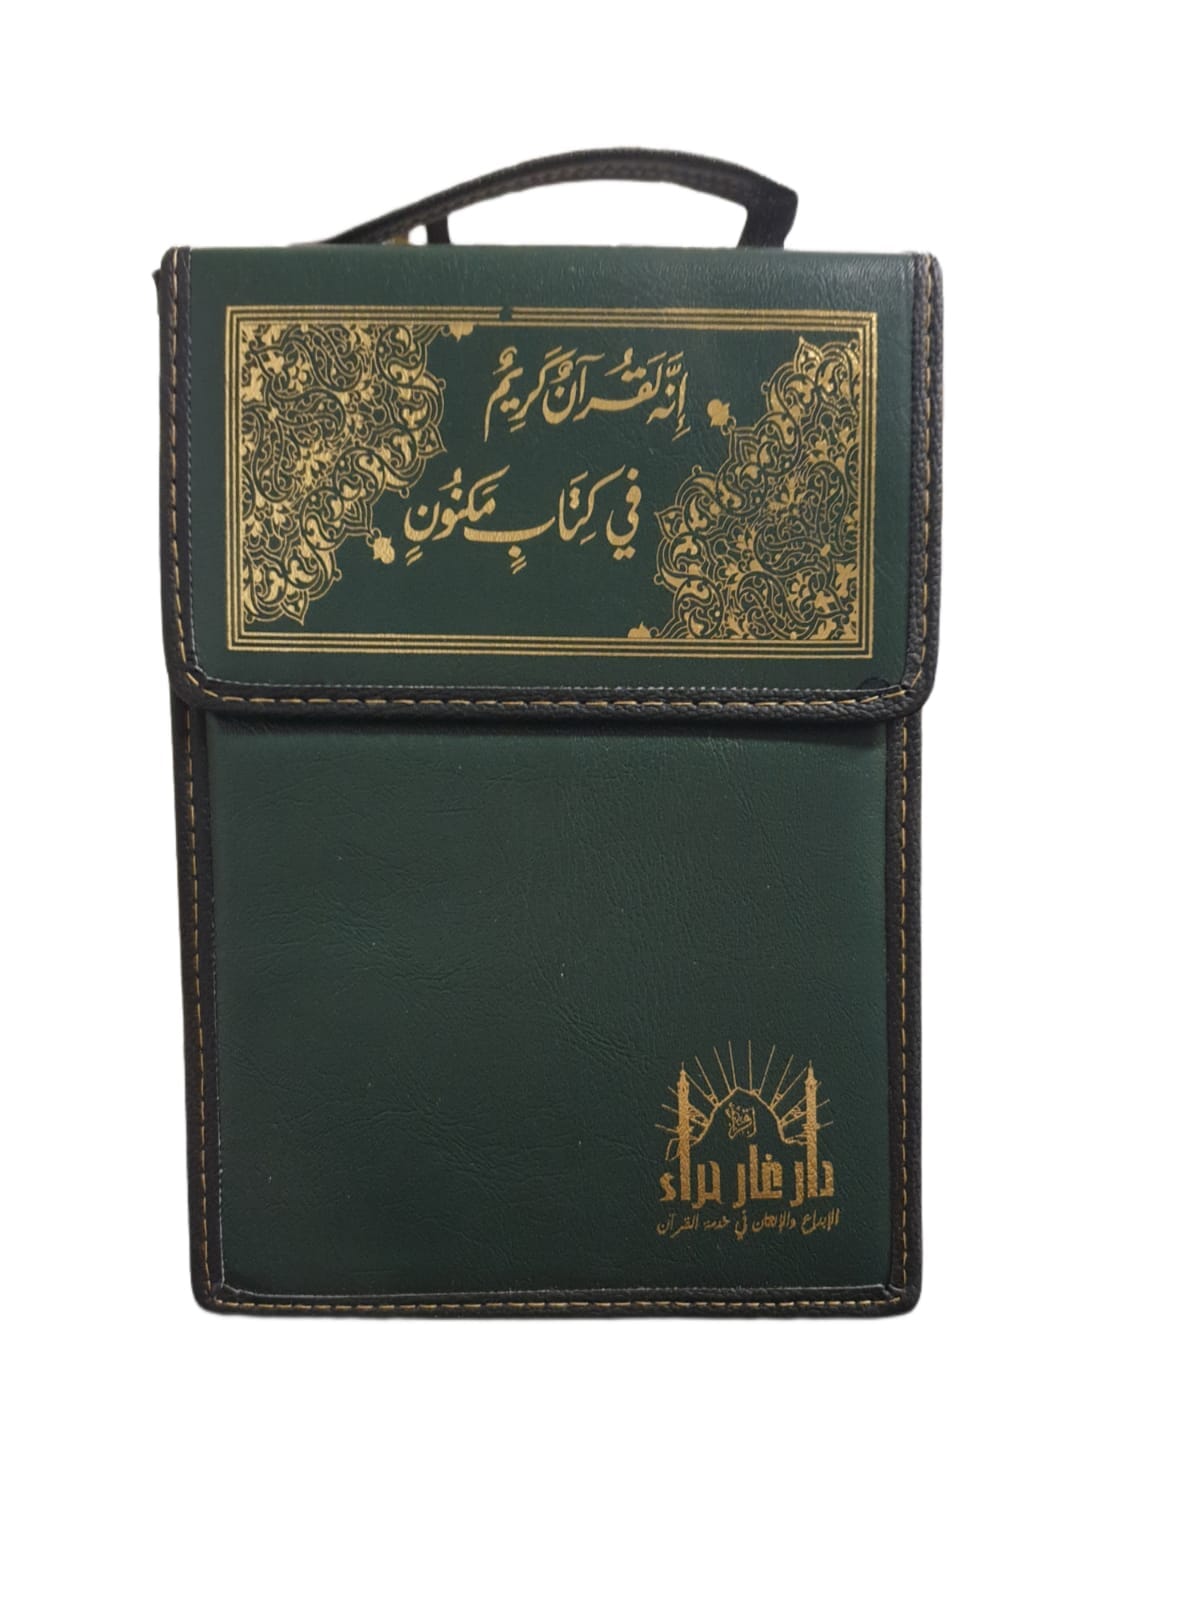 مصحف أجزاء مقسم 30 جزء مع حقيبة كتب إسلامية دار غار حراء 